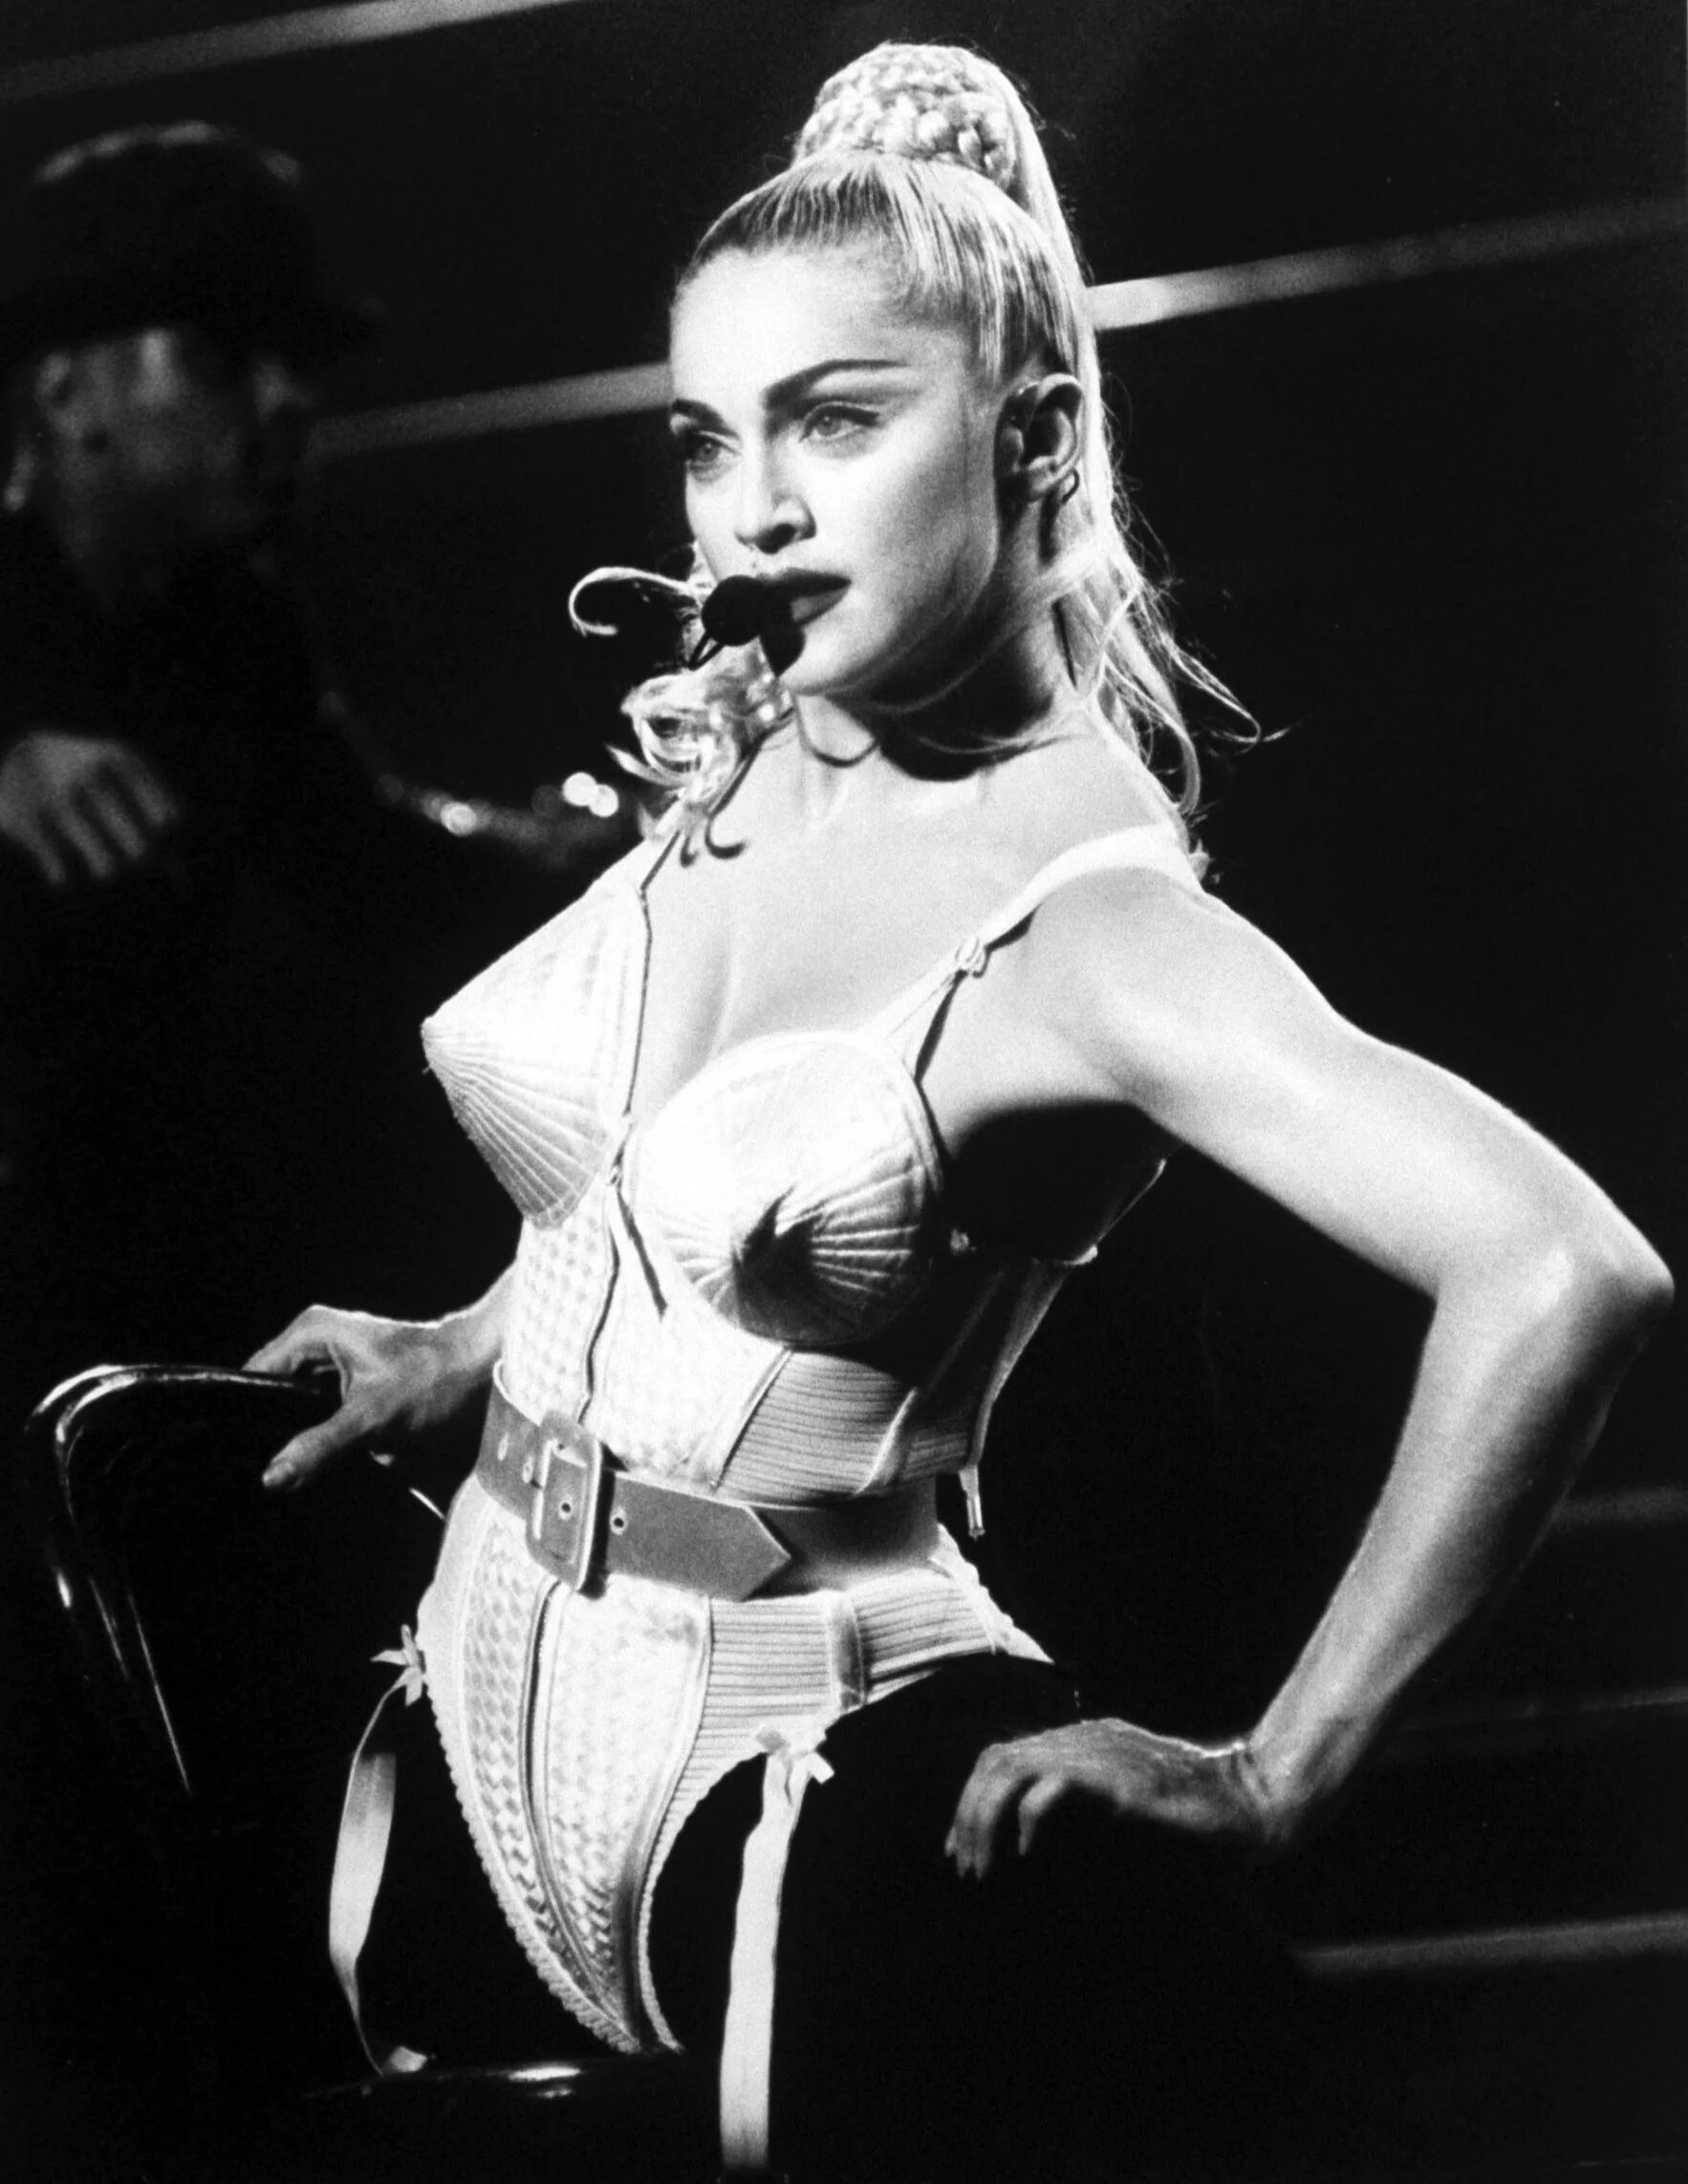 Мадонна ответила на критику своего поведения и внешности. Топ горячих фото взбалмошной певицы в молодости